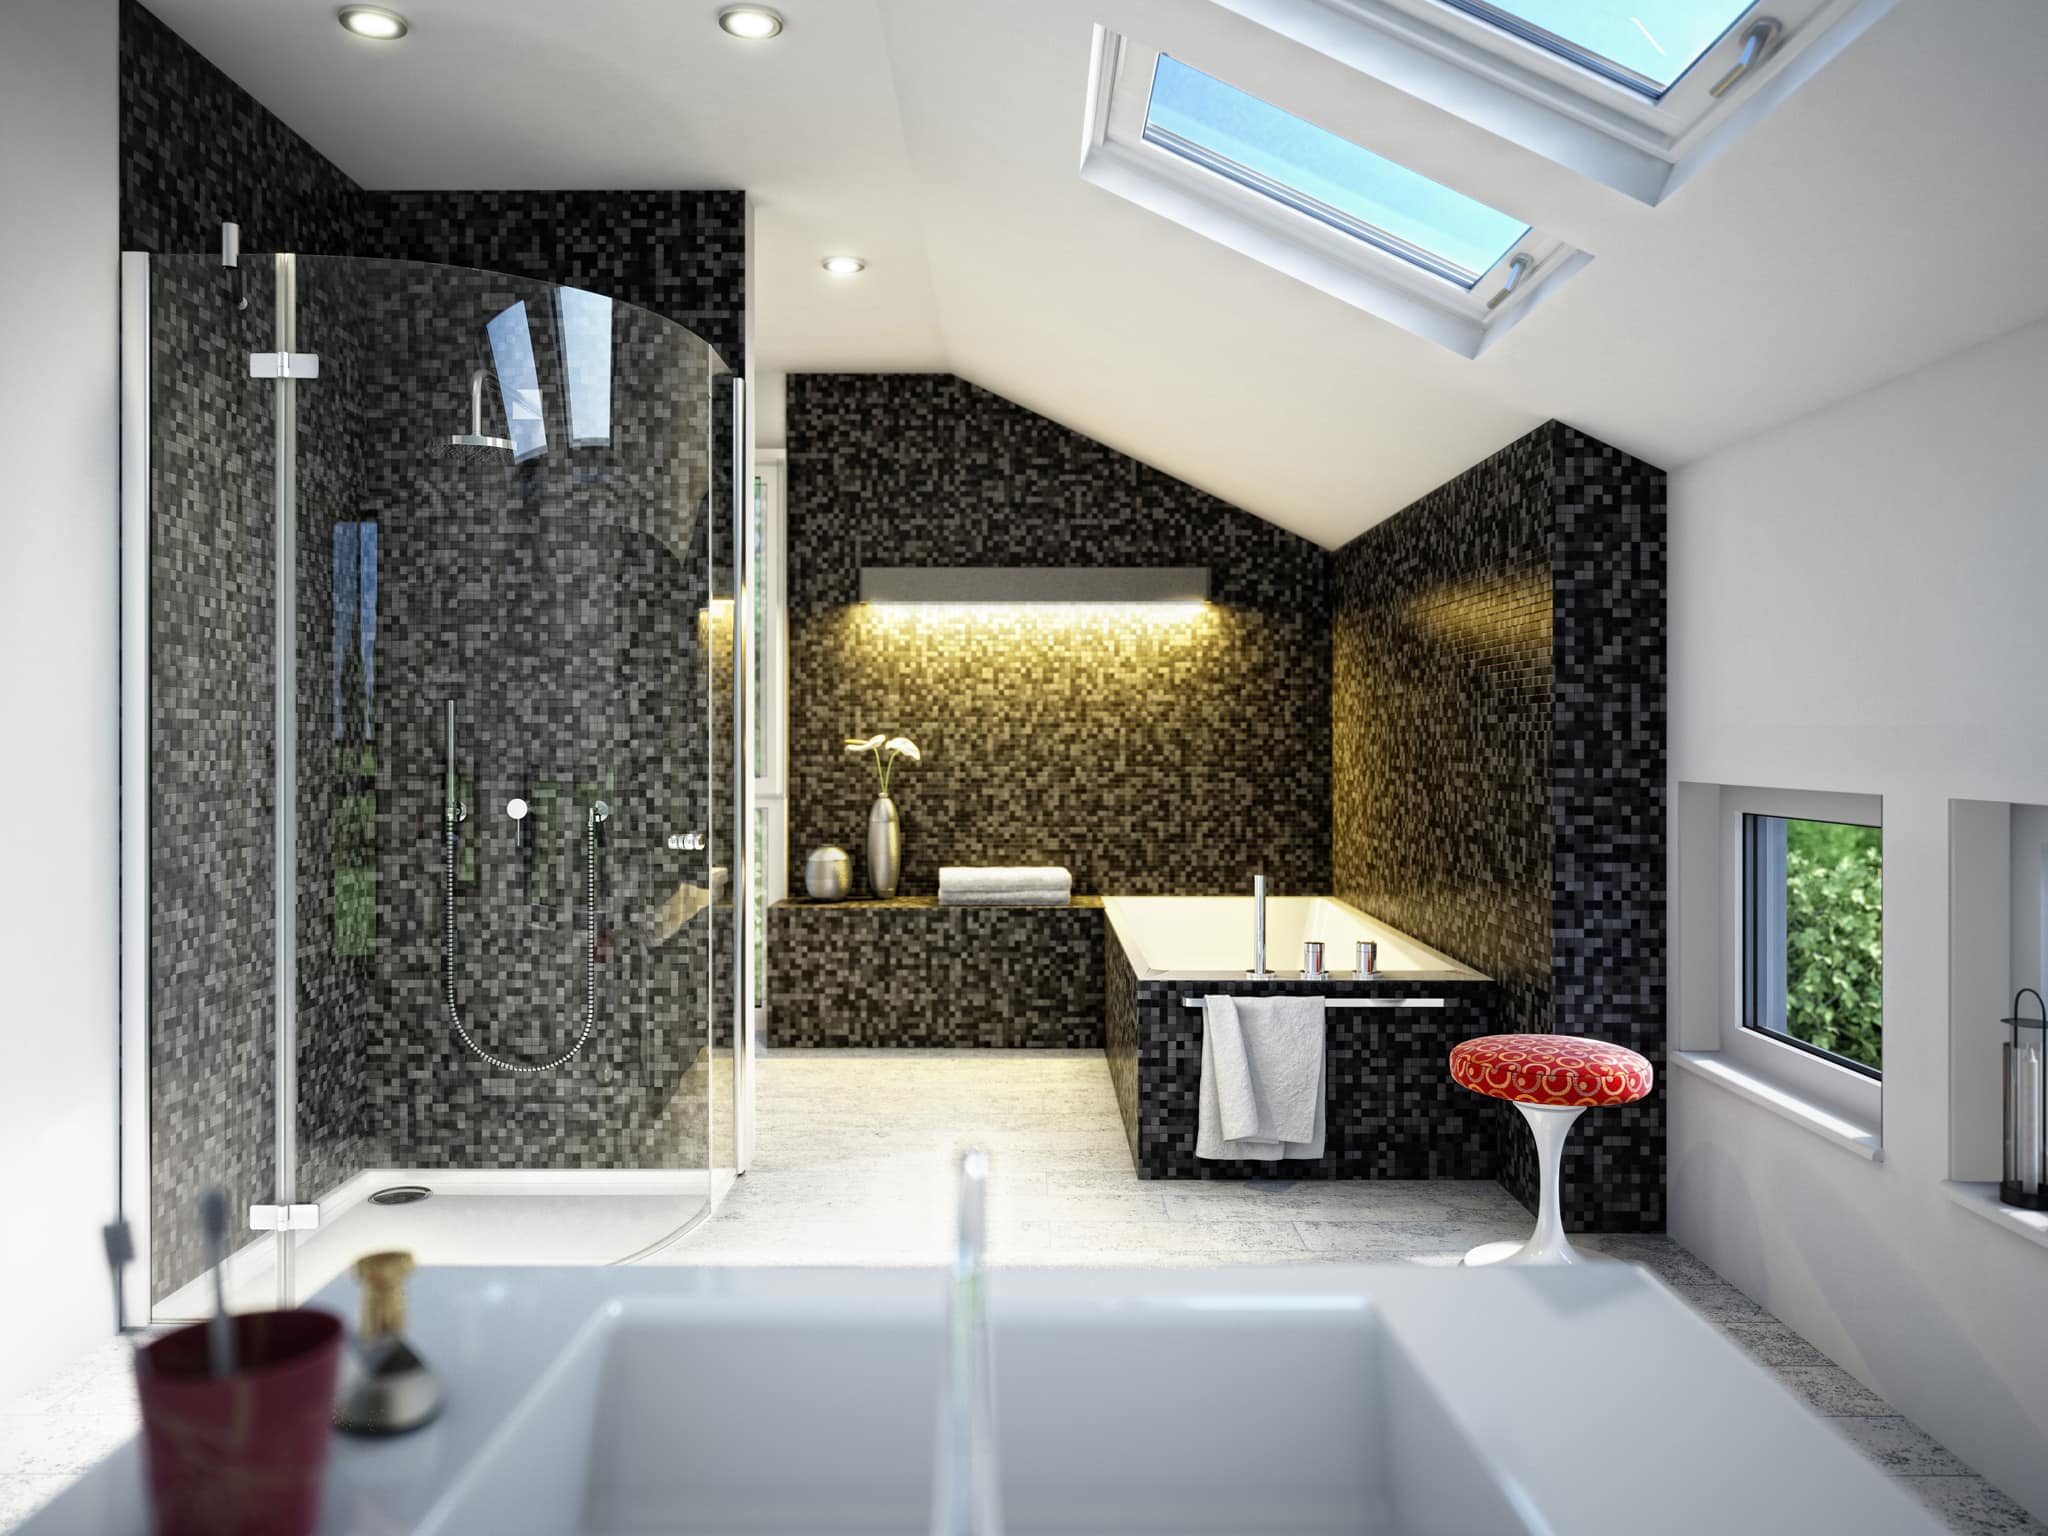 Badezimmer Ideen modern mit Dachschräge & Mosaik Fliesen grau schwarz - Wohnideen Einfamilienhaus SUNSHINE 113 V5 von Living Haus - HausbauDirekt.de